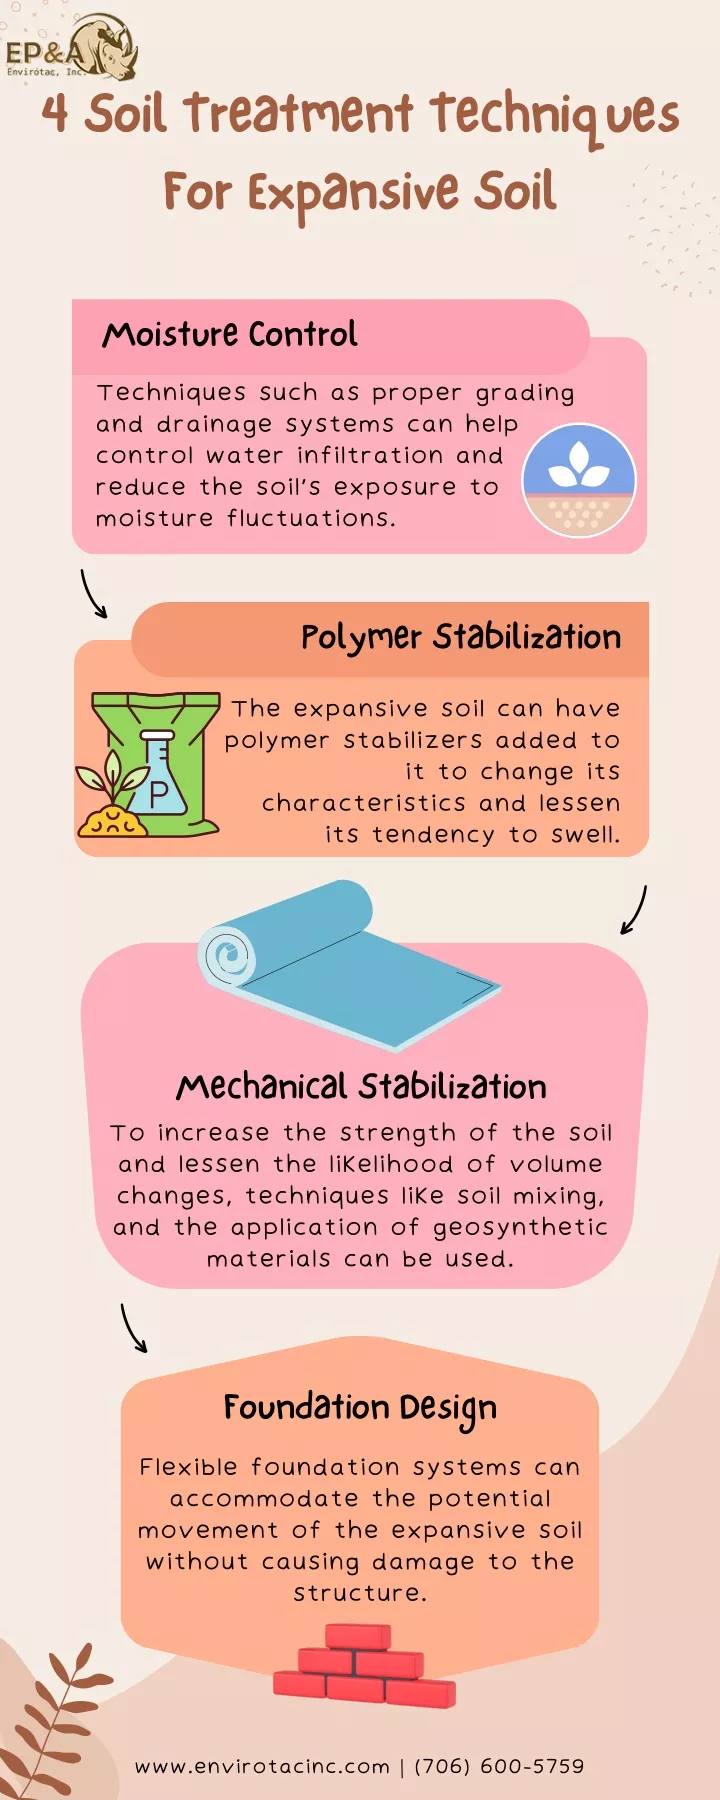 4 soil treatment techniques for expansive soil